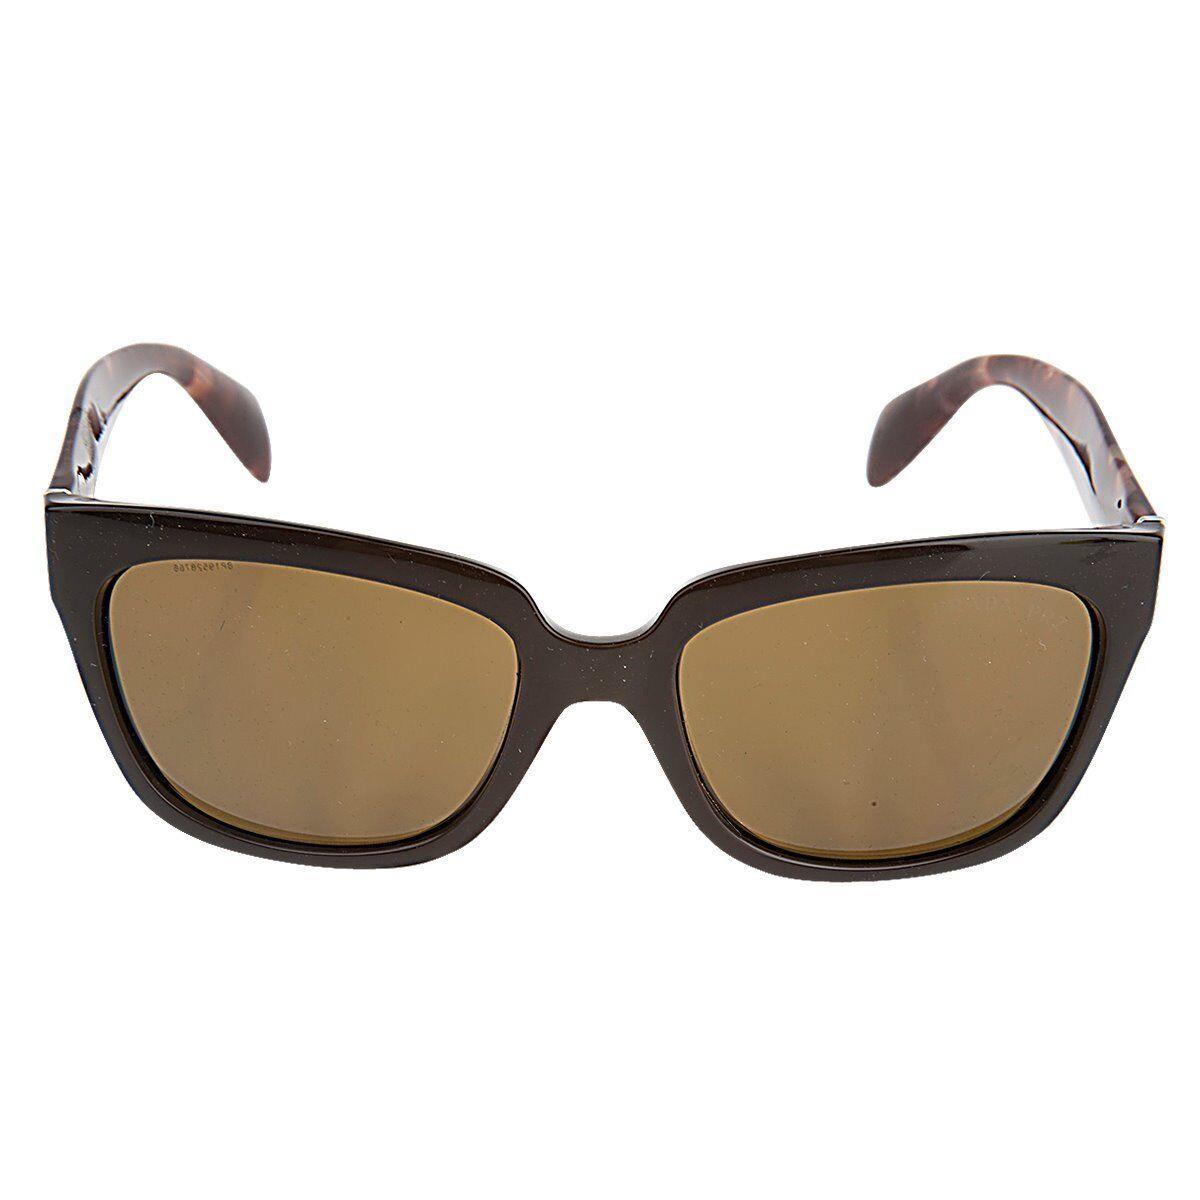 Prada Unisex Tortoise Sunglasses Spr 07PS DHO5Y1 - Tortoise Frame, Brown Lens